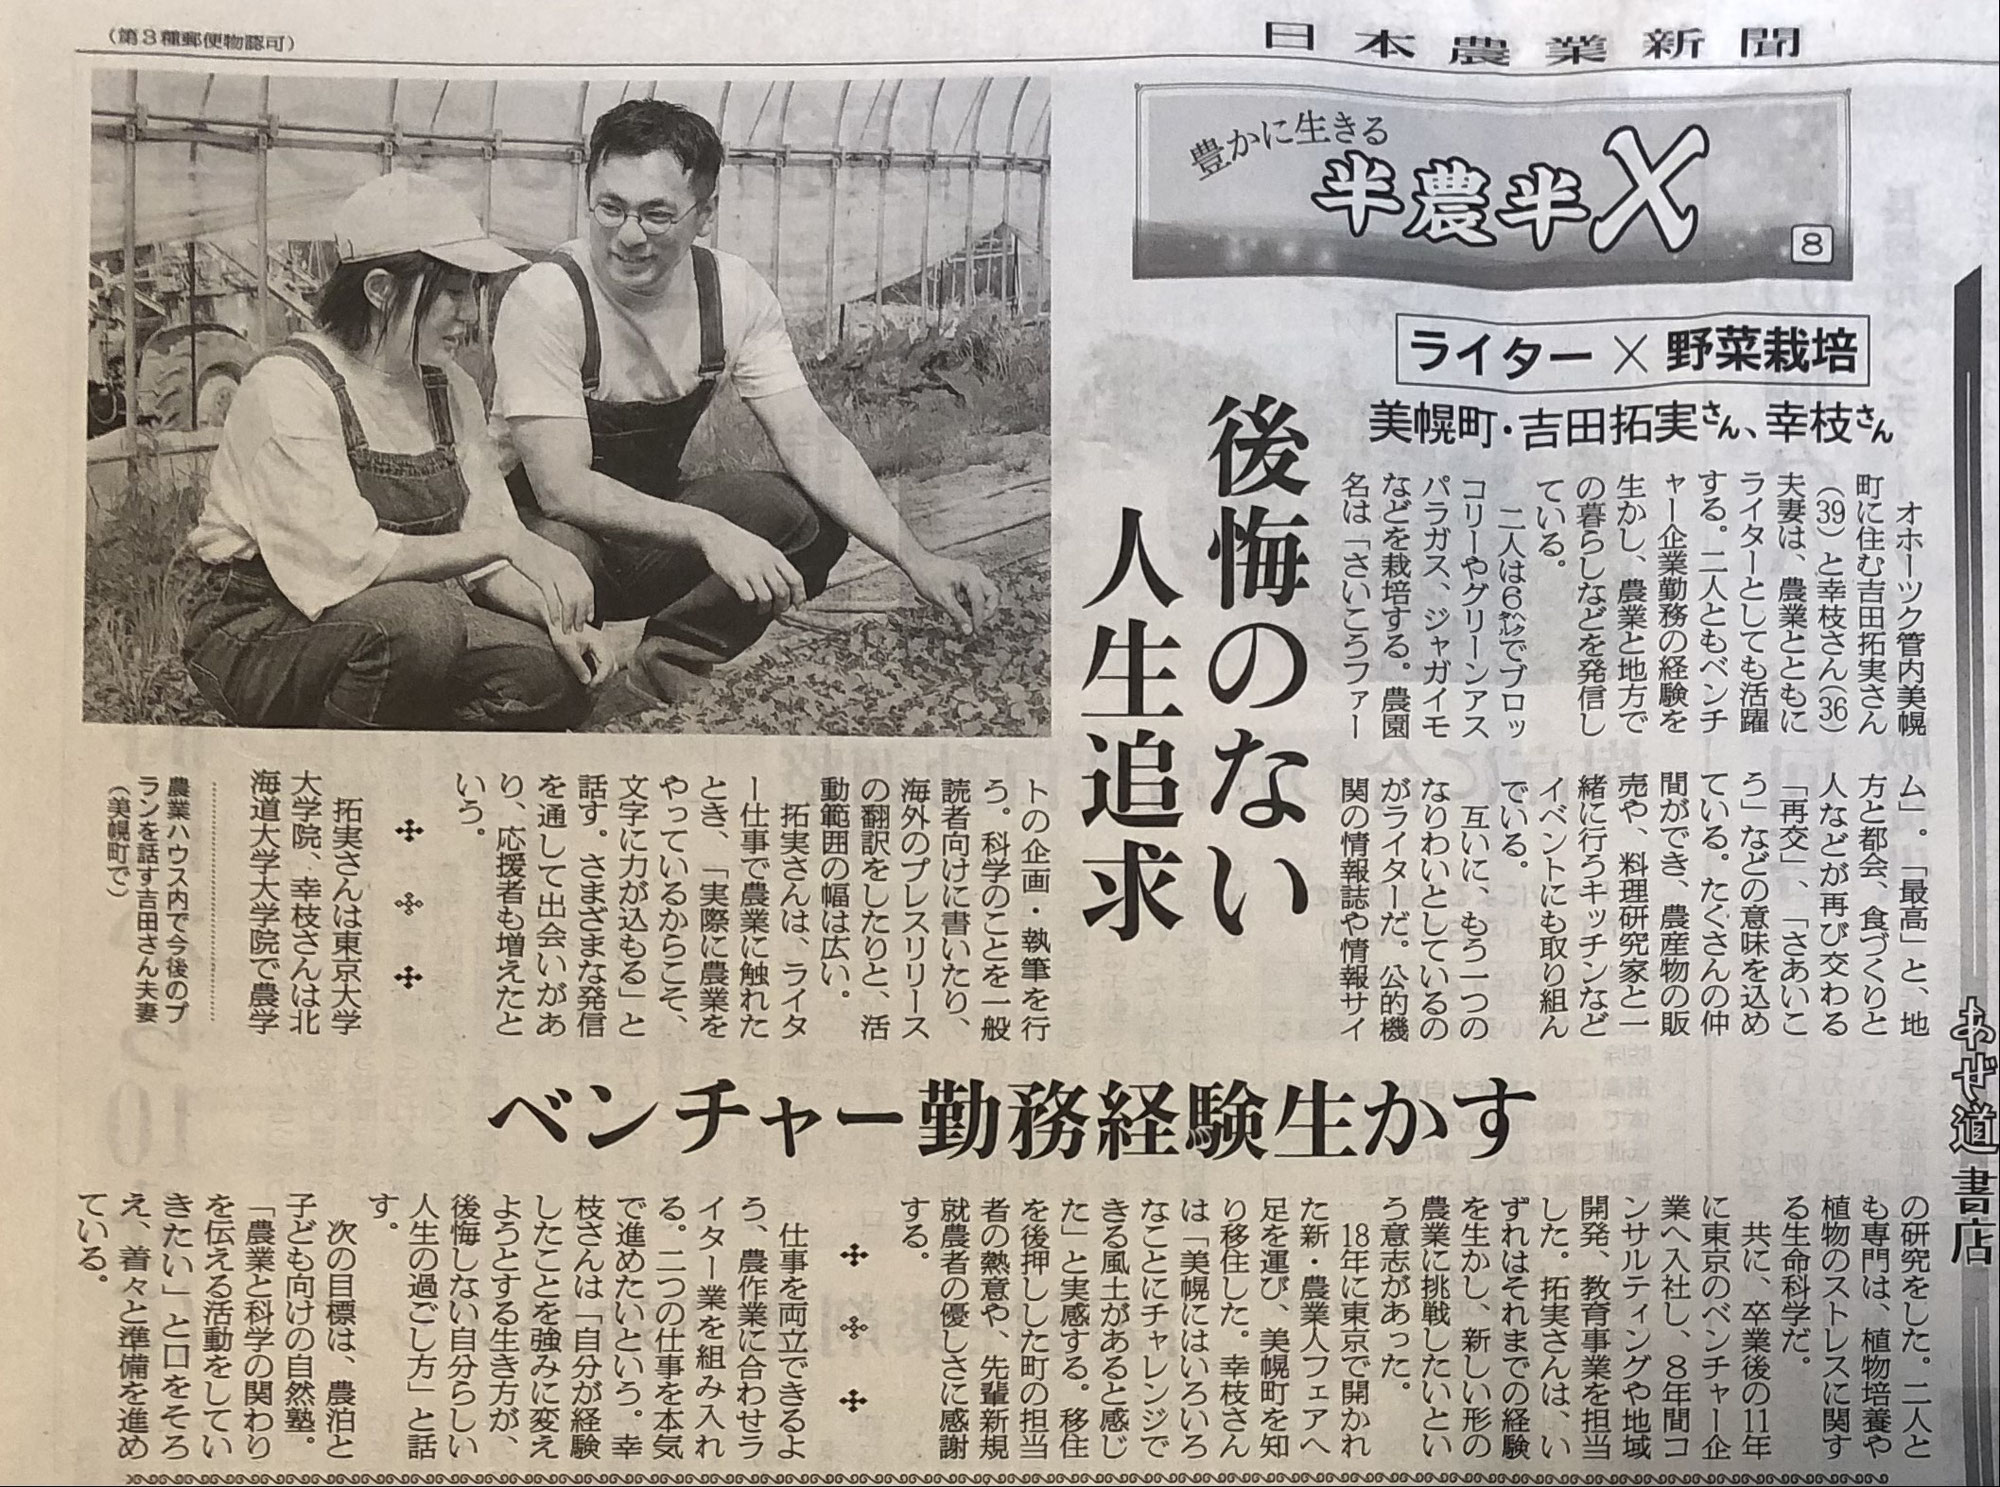 【メディア】6/27付の日本農業新聞にさいこうファームが掲載されました